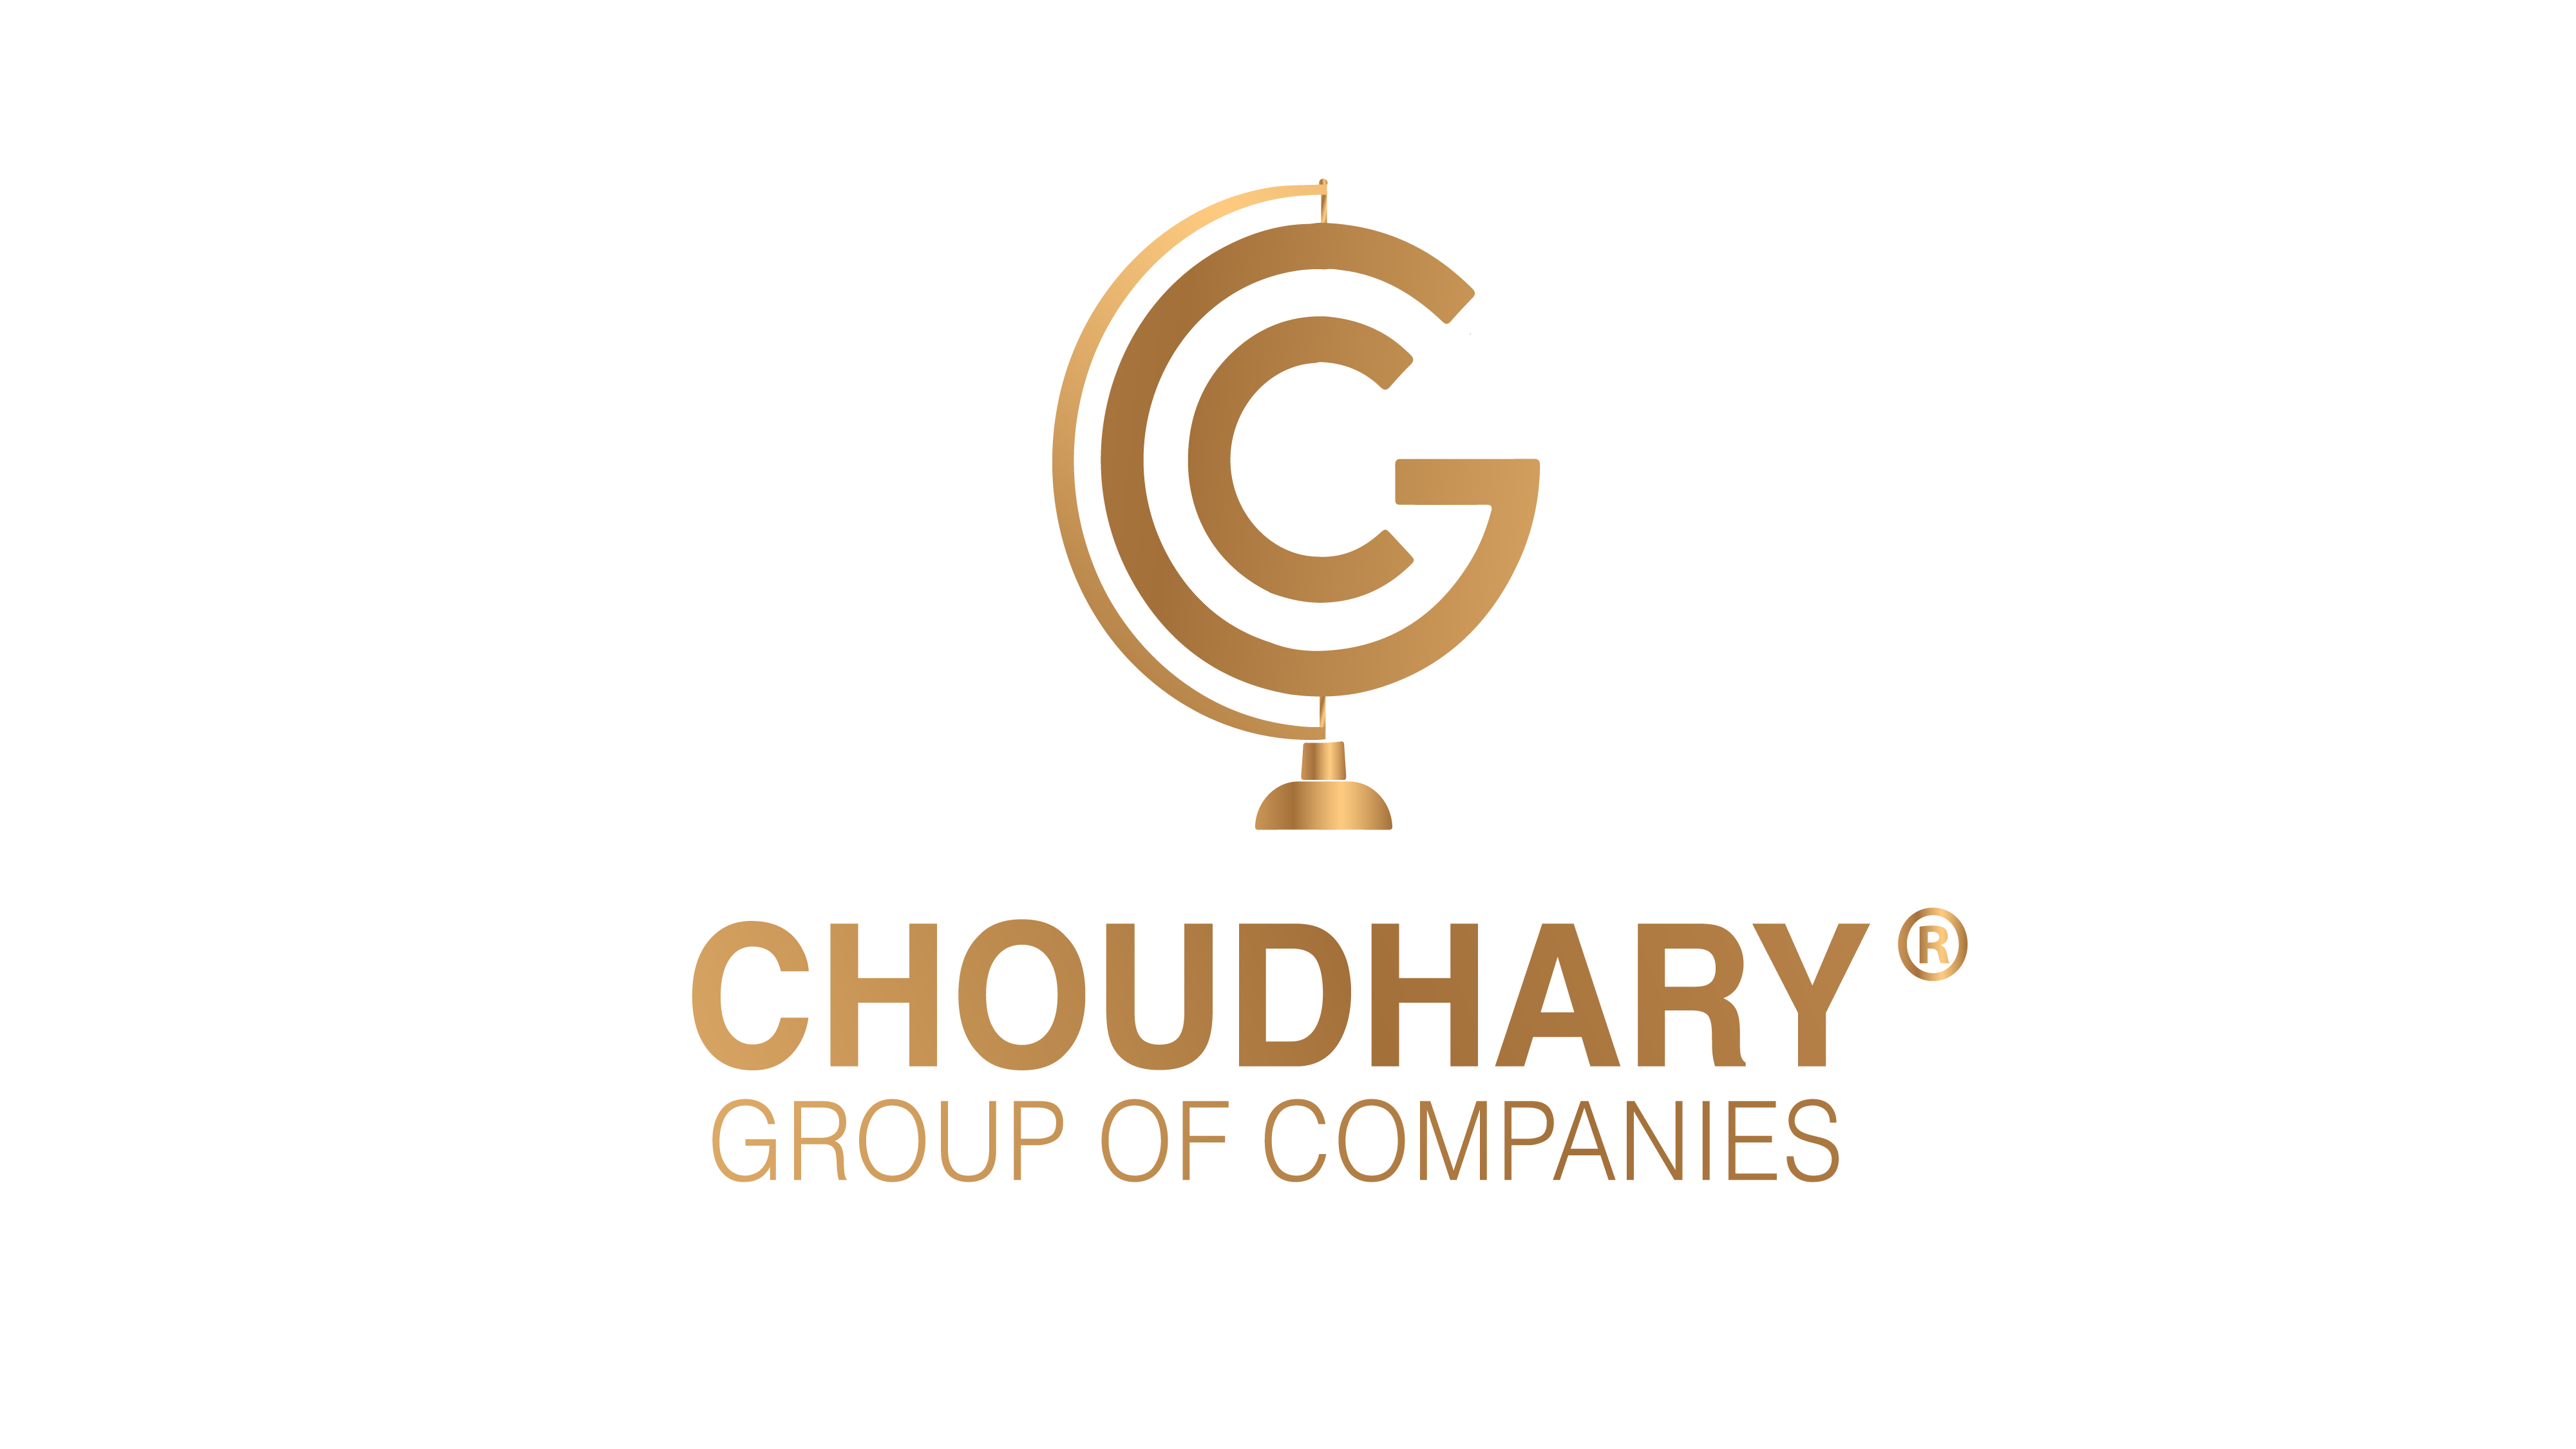 Choudhary Group of Companies